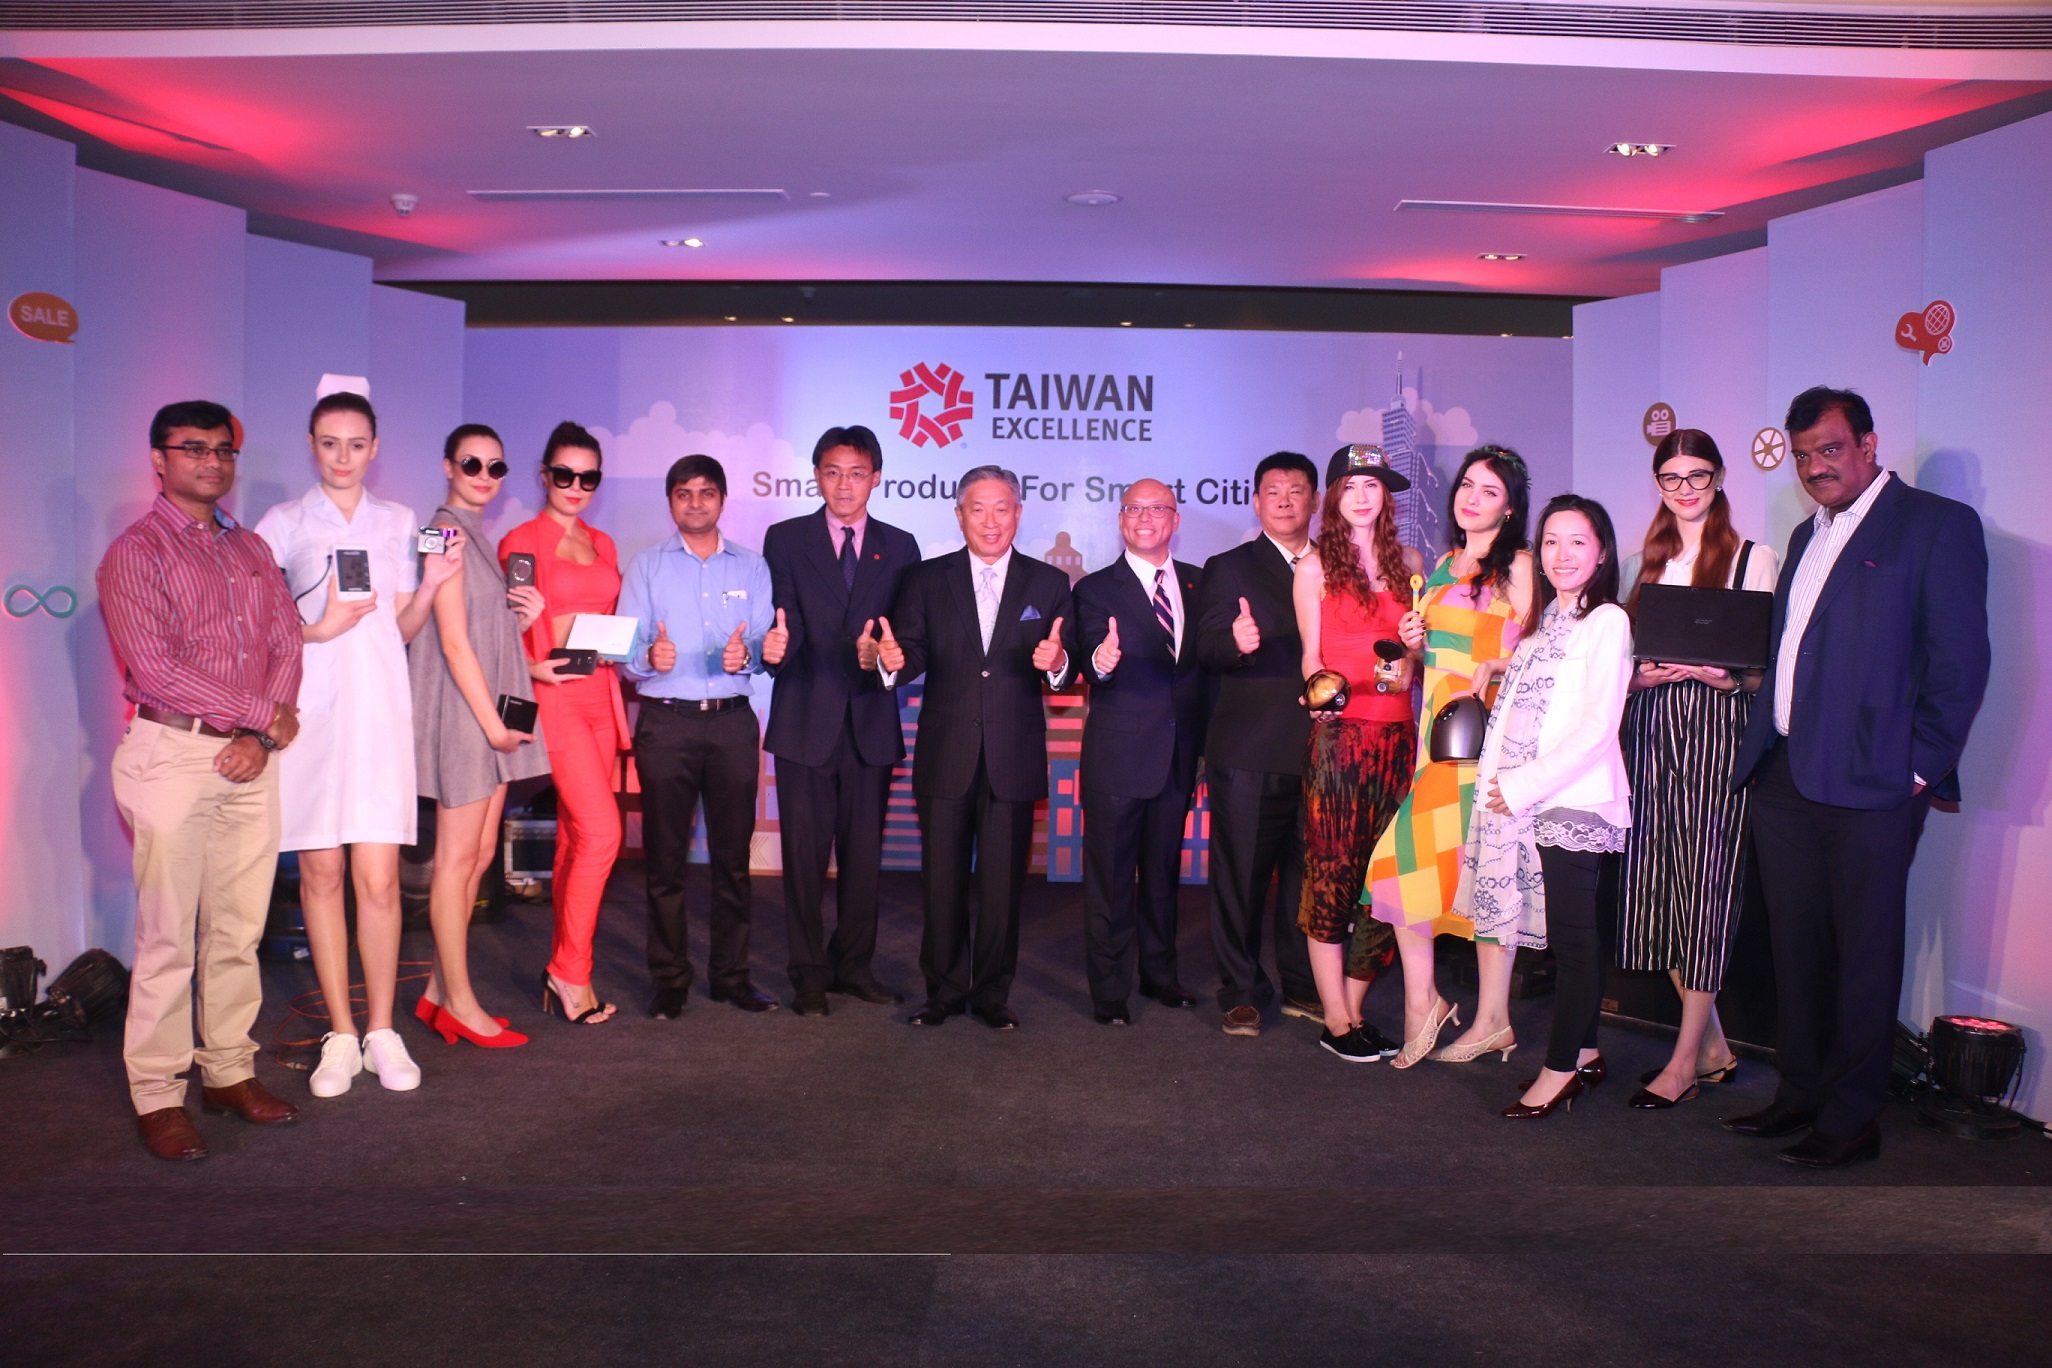 CHUNG KWANG TIEN  Taiwan- Ambassador  at the Launch of Smart Prodcuts for Smar_